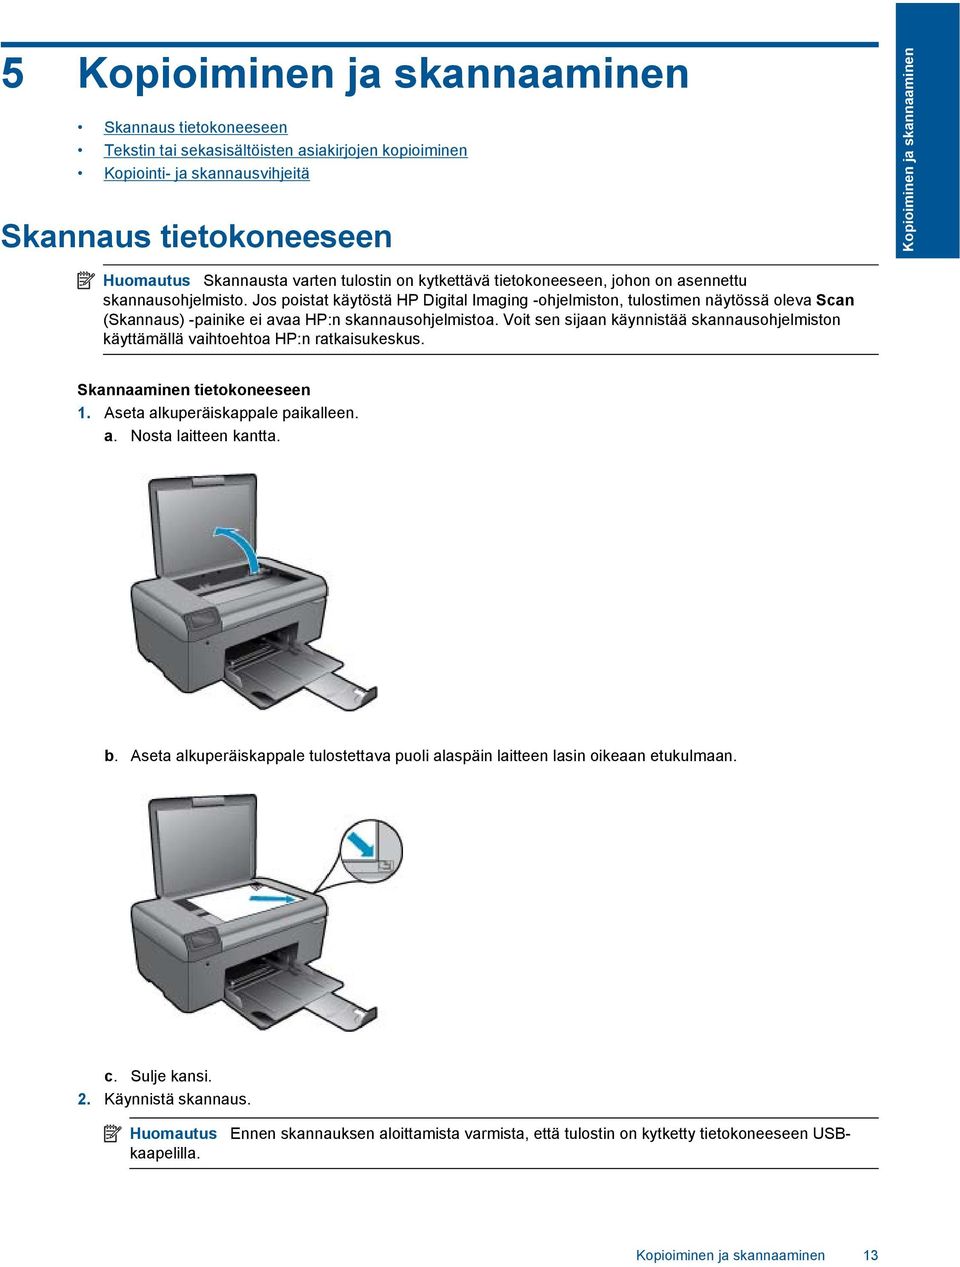 Jos poistat käytöstä HP Digital Imaging -ohjelmiston, tulostimen näytössä oleva Scan (Skannaus) -painike ei avaa HP:n skannausohjelmistoa.